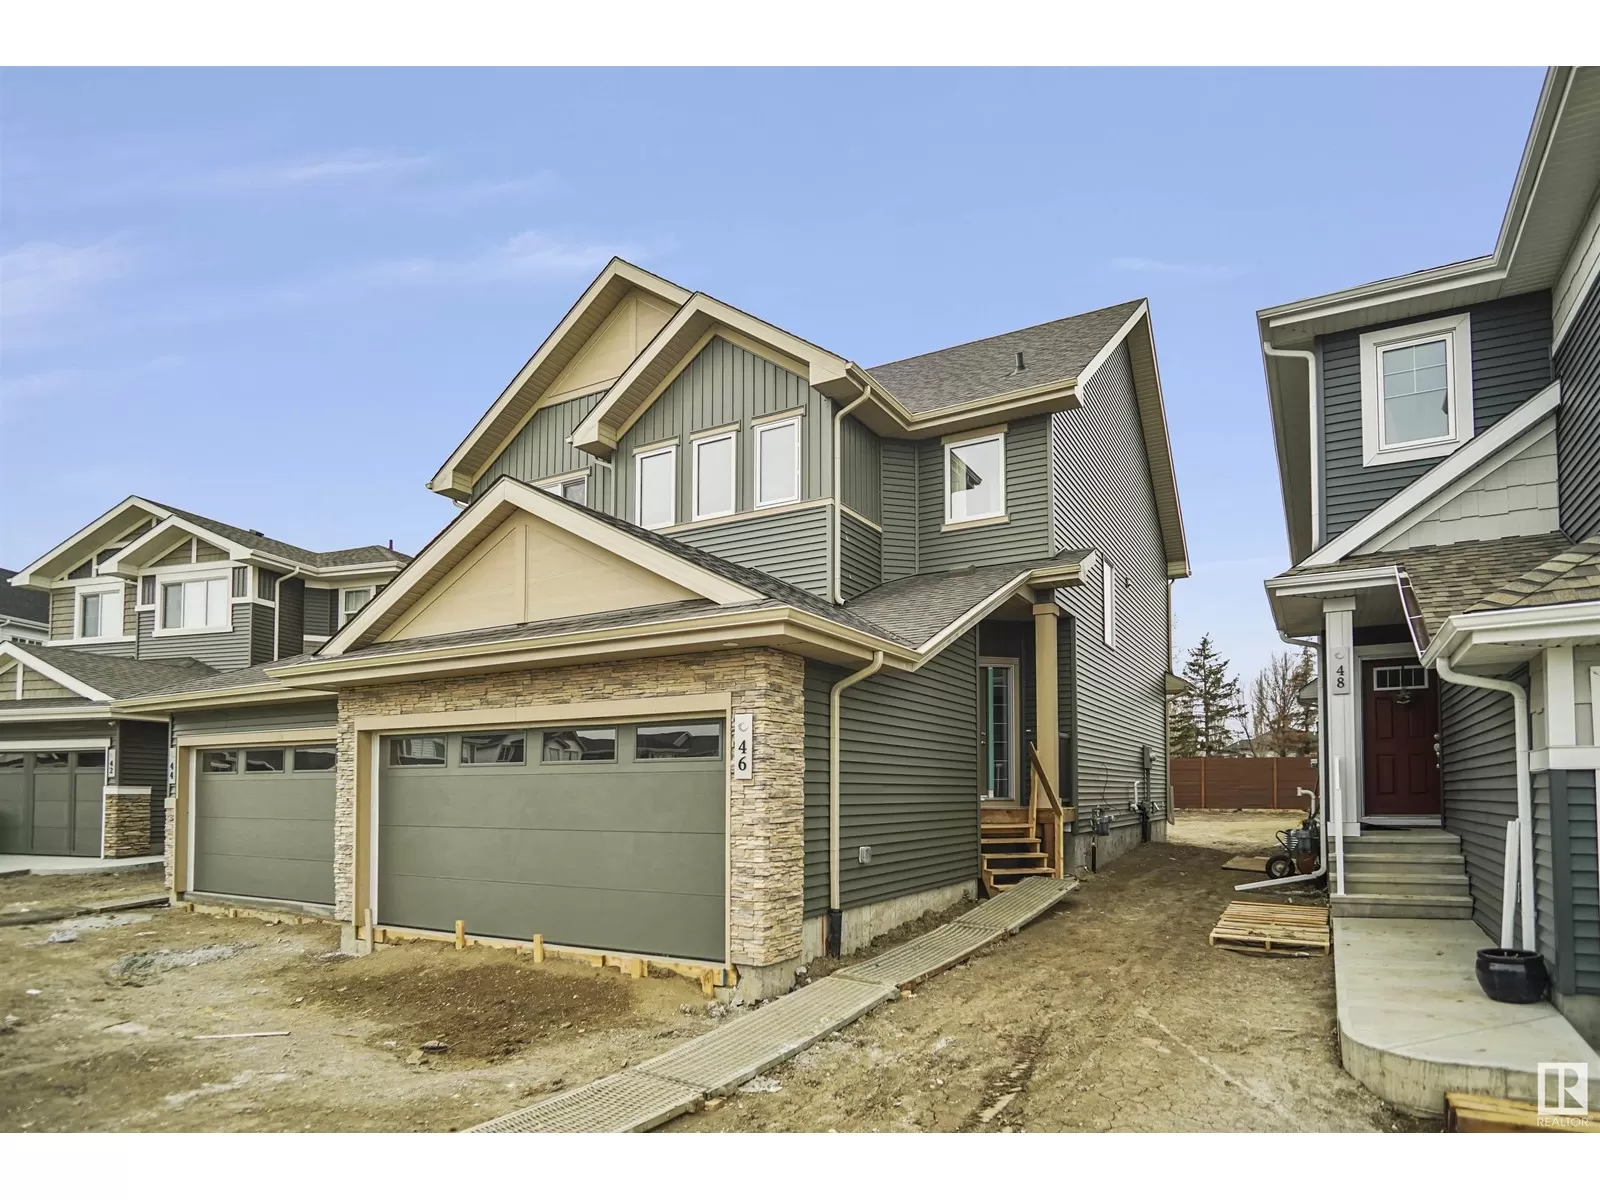 Duplex for rent: 46 Jennifer Cr, St. Albert, Alberta T8N 7Z6